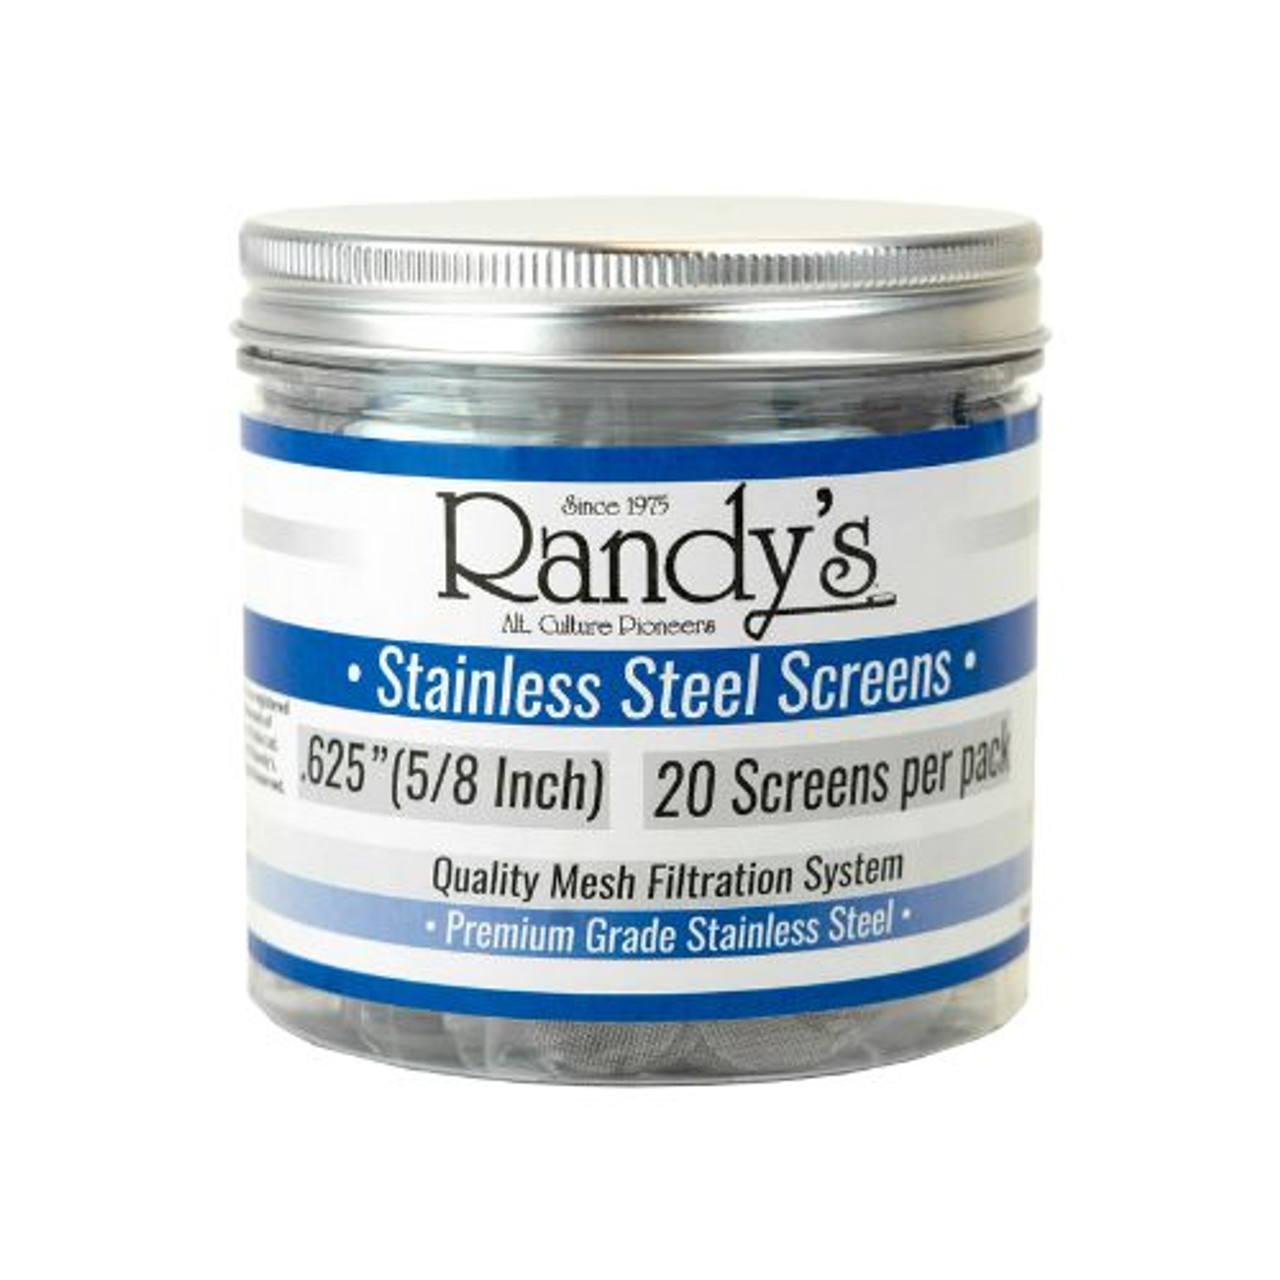 Randy's .625" Stainless Steel Screen Jar - 36 ct.